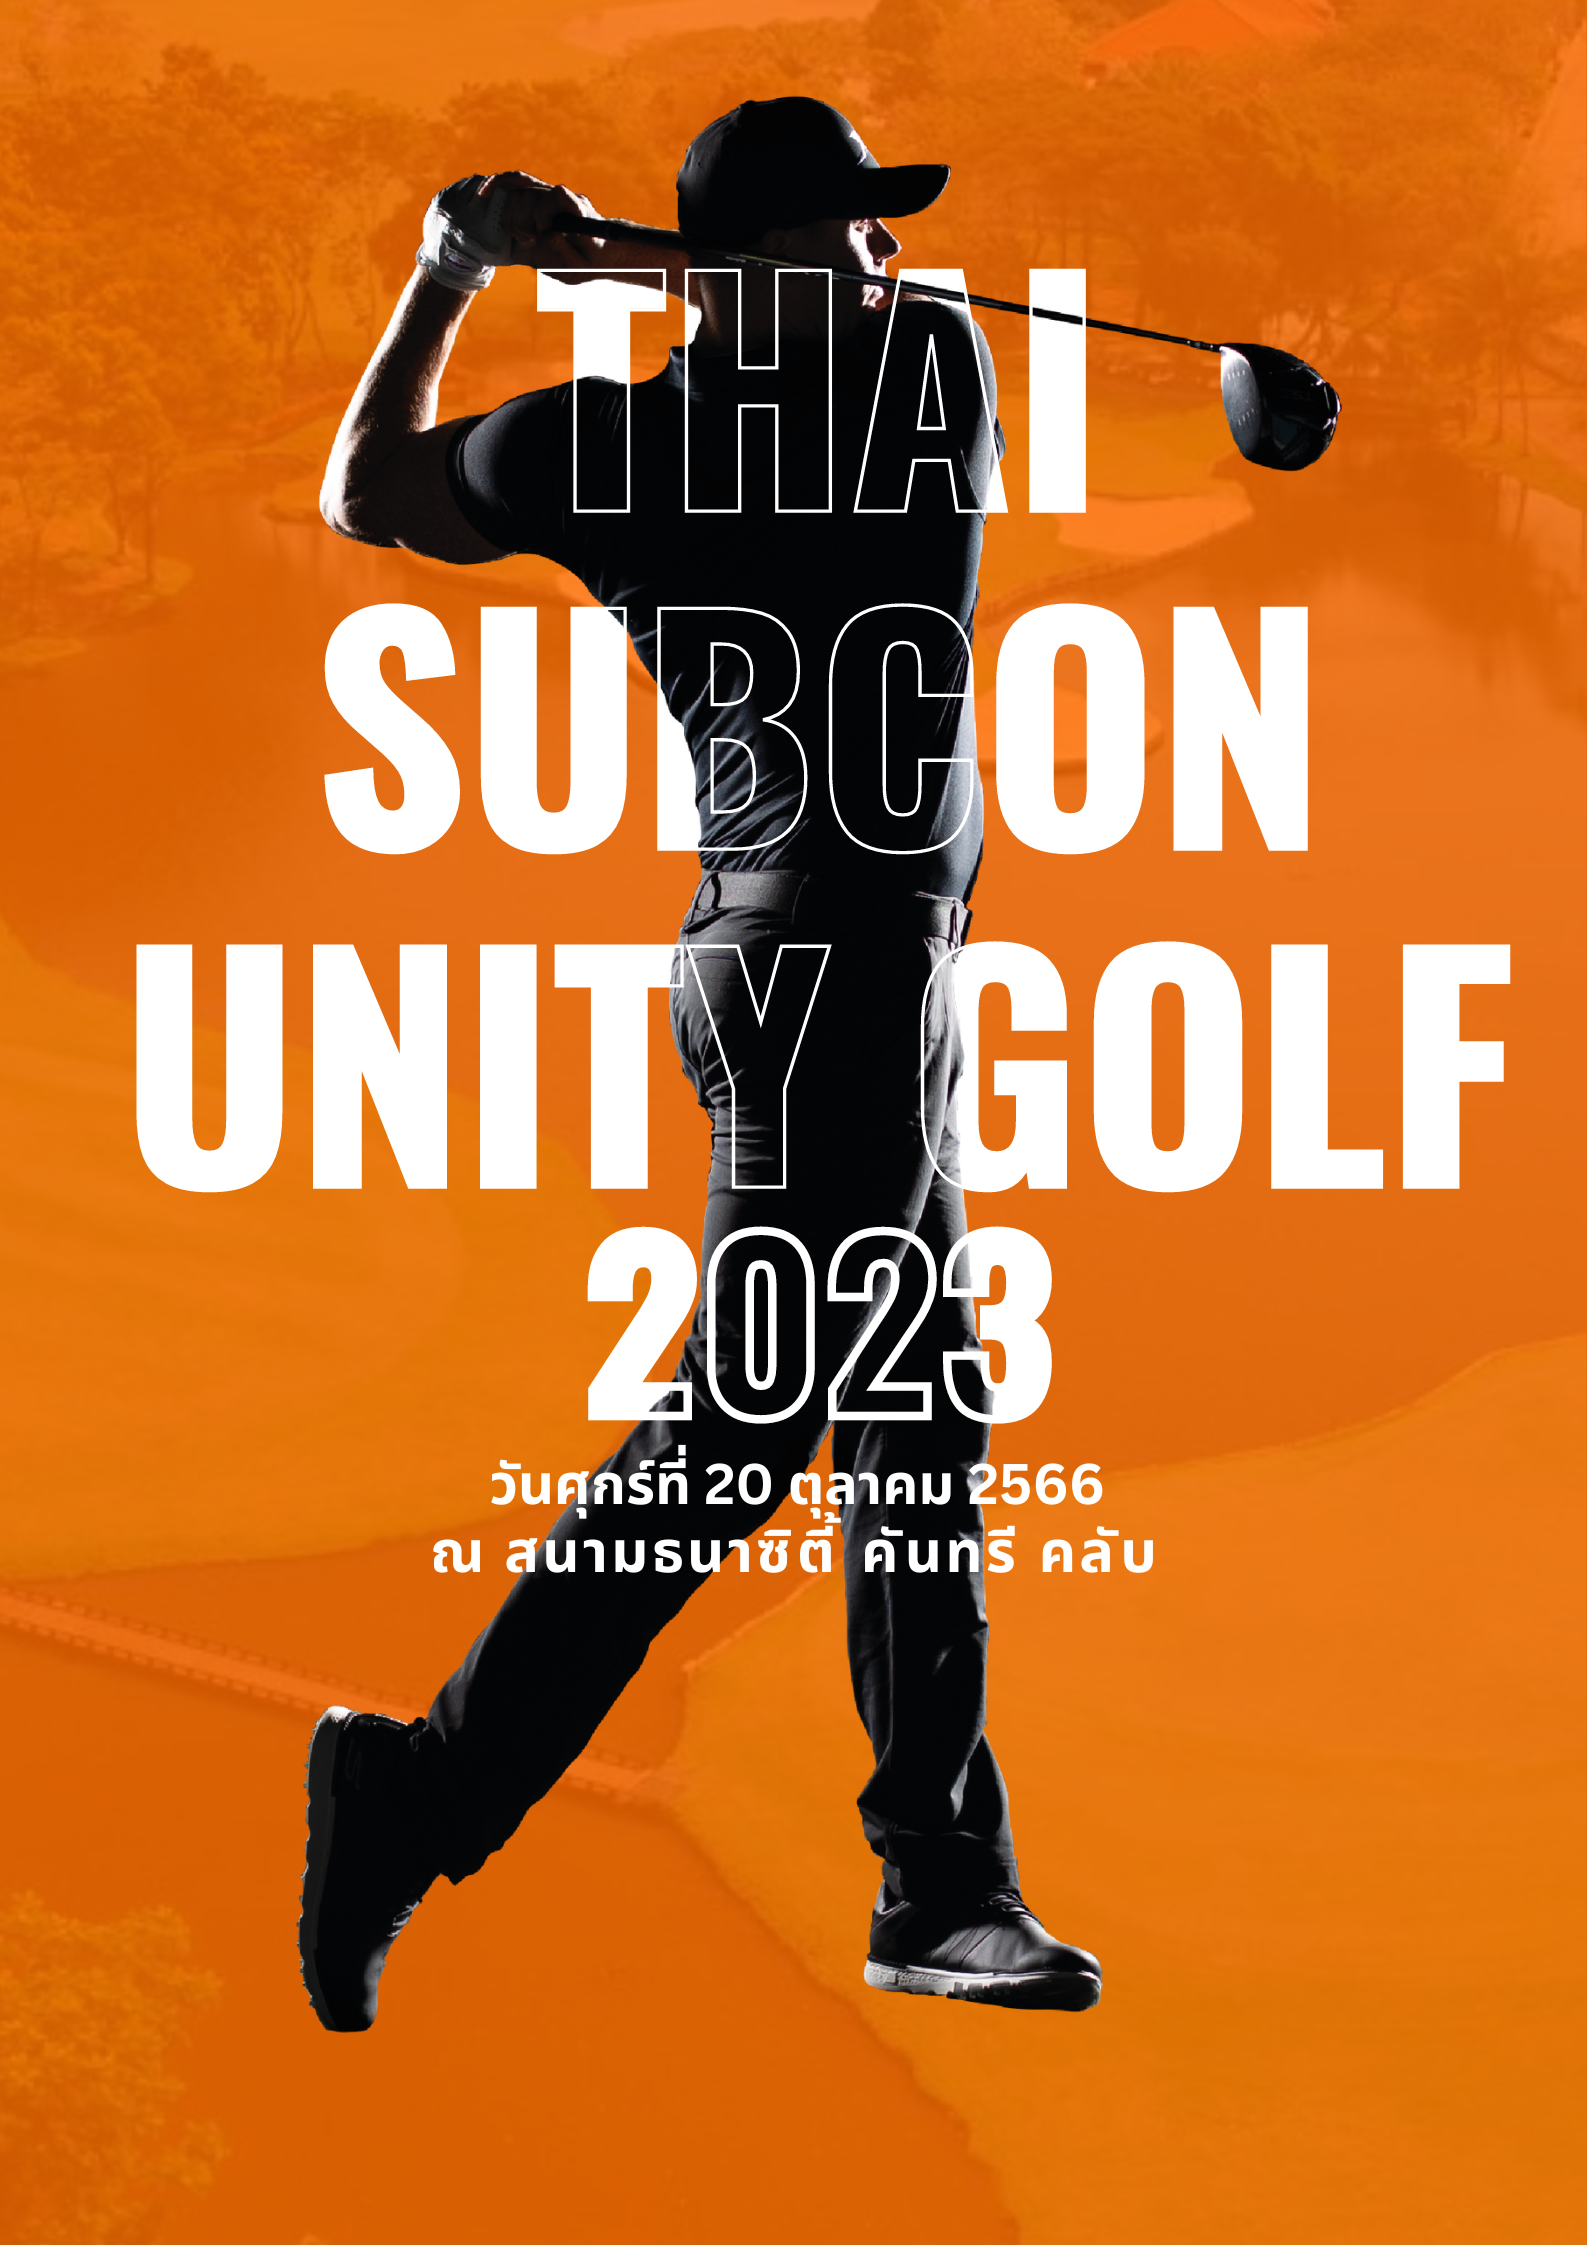 ผ่านไปแล้วกับกิจกรรม Thai Subcon Unity Golf 2023 ในวันศุกร์ ที่ 20 ตุลาคม 2566  ณ สนาม ธนาซิตี้ คันทรี คลับ